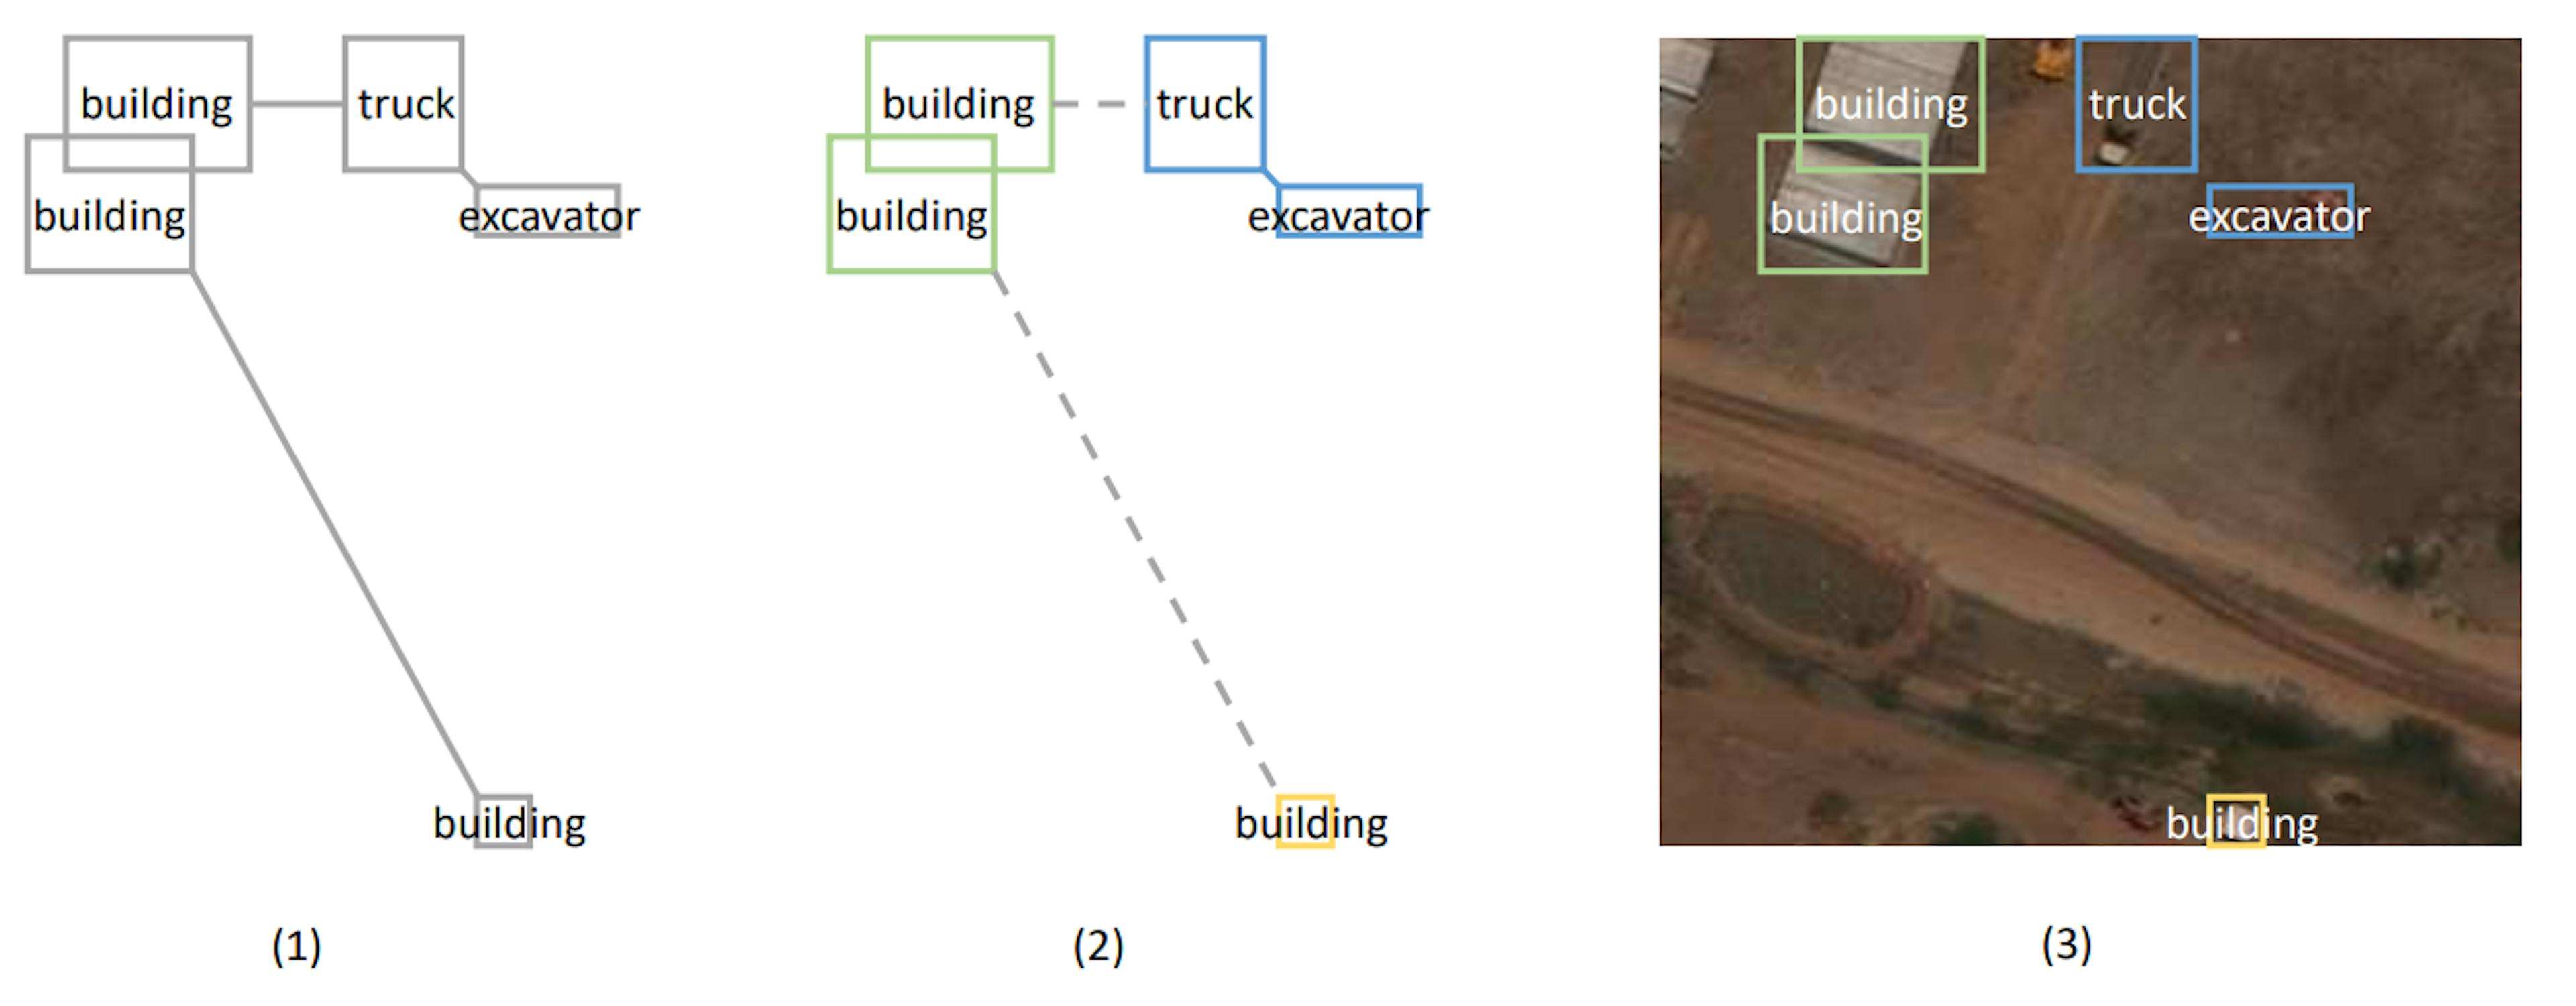 Abbildung 1: Illustration des MST-basierten Clusteralgorithmus. Abbildung (1) zeigt den erstellten Graphen, der den minimalen Spannbaum darstellt. Der Abstand zwischen Objekten unterschiedlichen Typs wird durch zusätzliche Länge vergrößert. Abbildung (2) zeigt die Cluster, die durch das Abschneiden langer Kanten gebildet werden. Abbildung (3) projiziert die Position der Objekte auf das reale Bild.